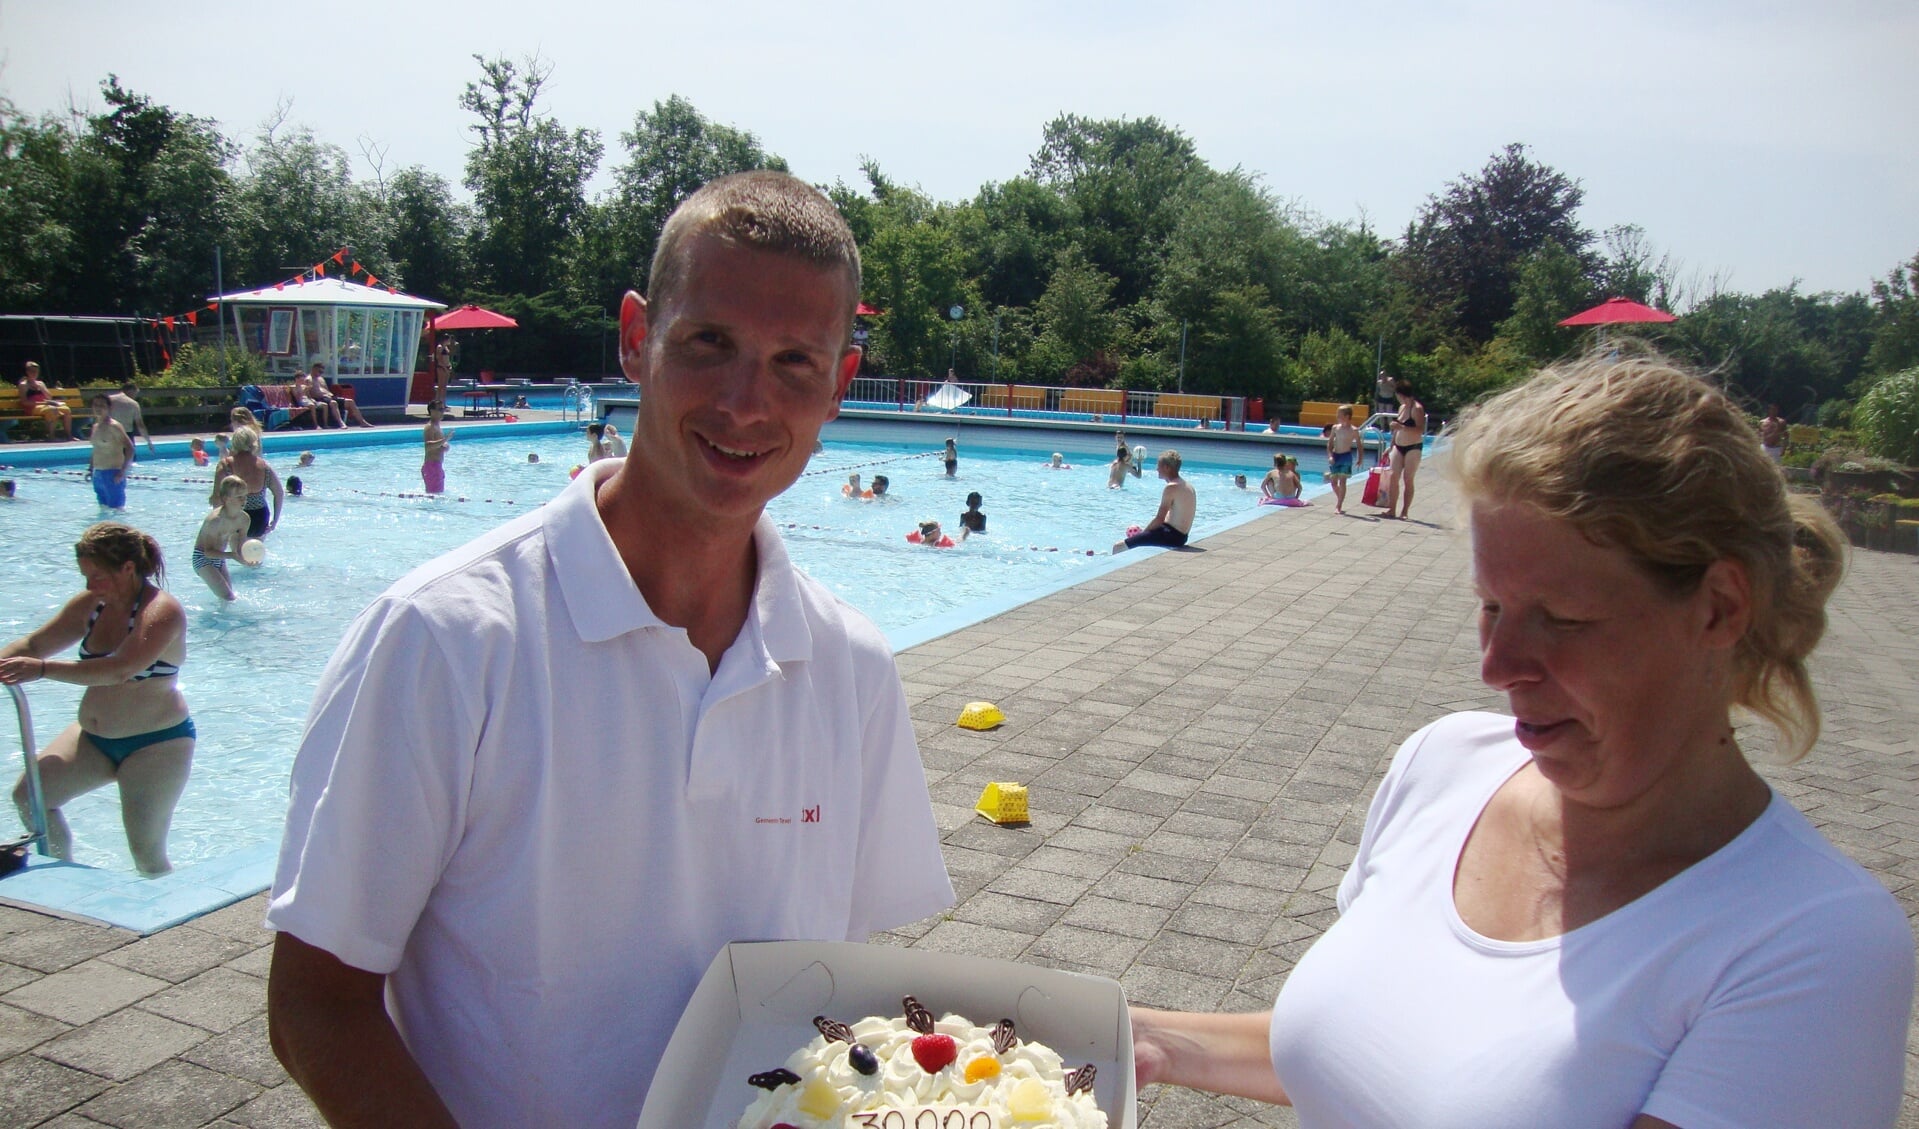 Badmeester Remko Spelde overhandigt een taart aan 30.000ste bezoeker Ingrid Neuman uit Westzaan. (Foto March Heijnen)